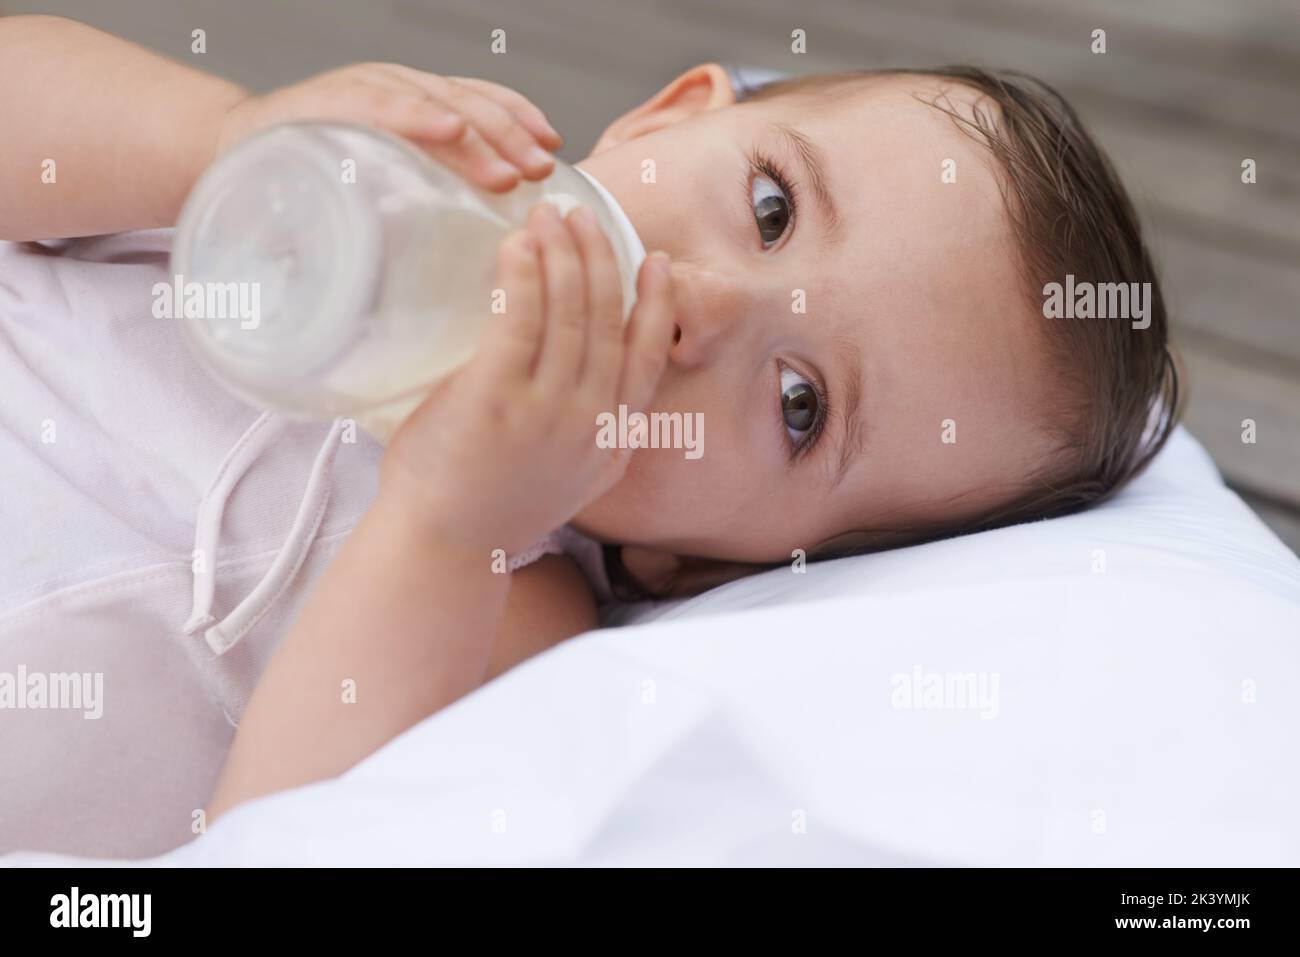 Tempo di allattamento per il bambino. Una bambina sdraiata mentre beve la formula da una bottiglia. Foto Stock